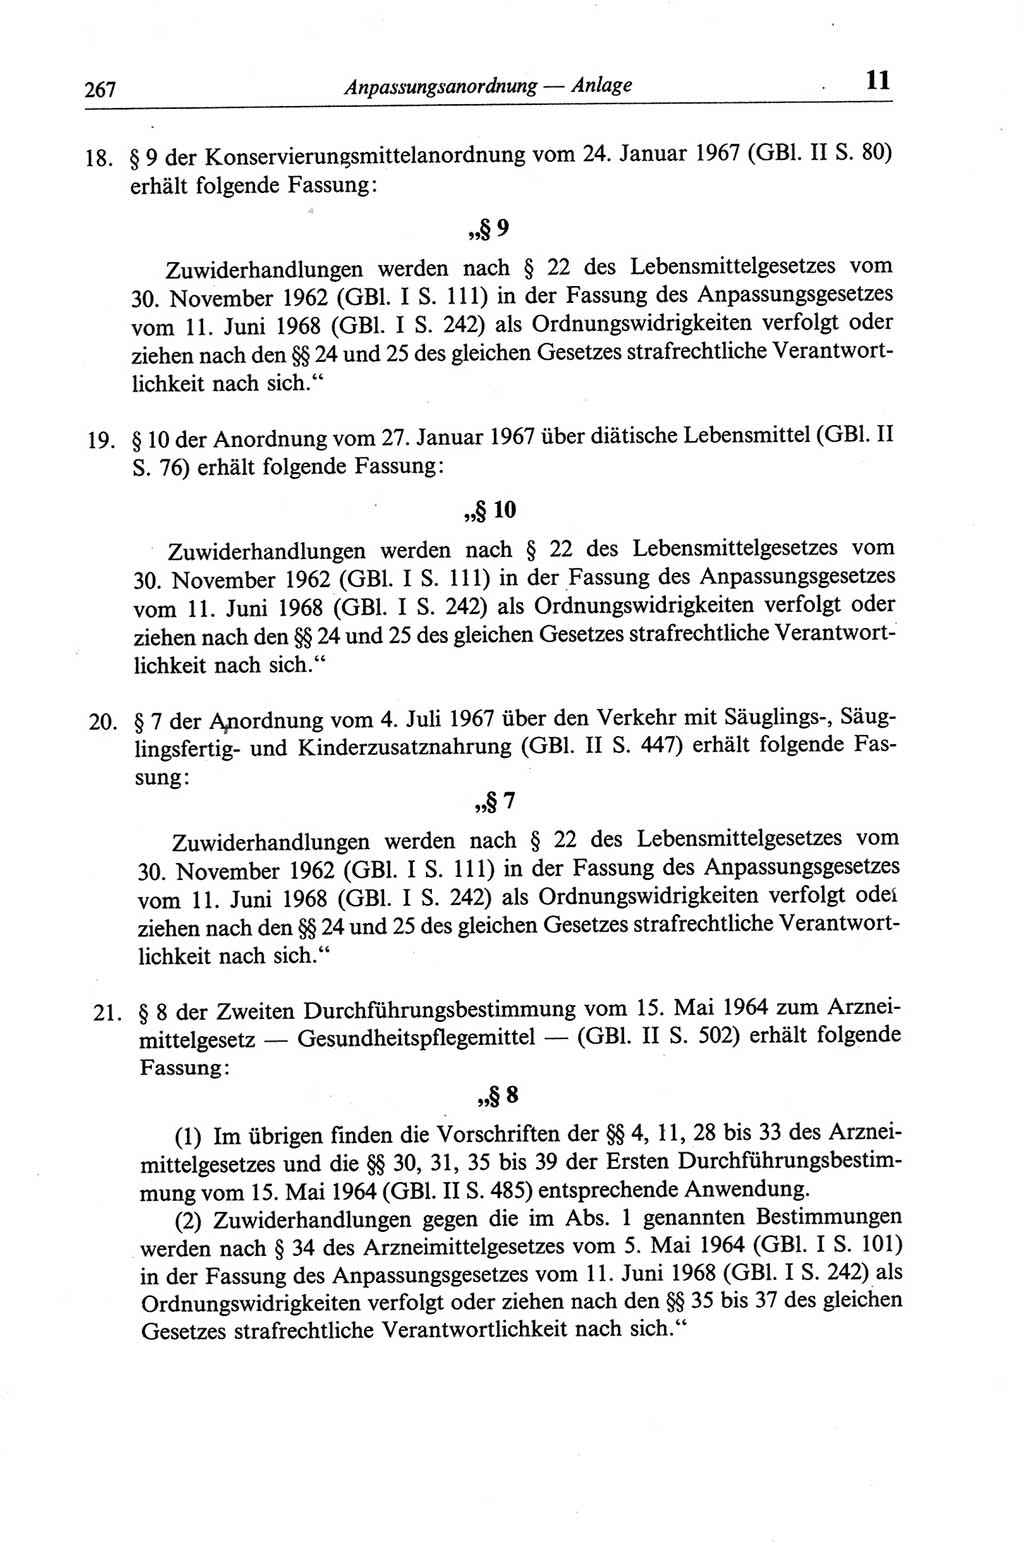 Strafgesetzbuch (StGB) der Deutschen Demokratischen Republik (DDR) und angrenzende Gesetze und Bestimmungen 1968, Seite 267 (StGB Ges. Best. DDR 1968, S. 267)